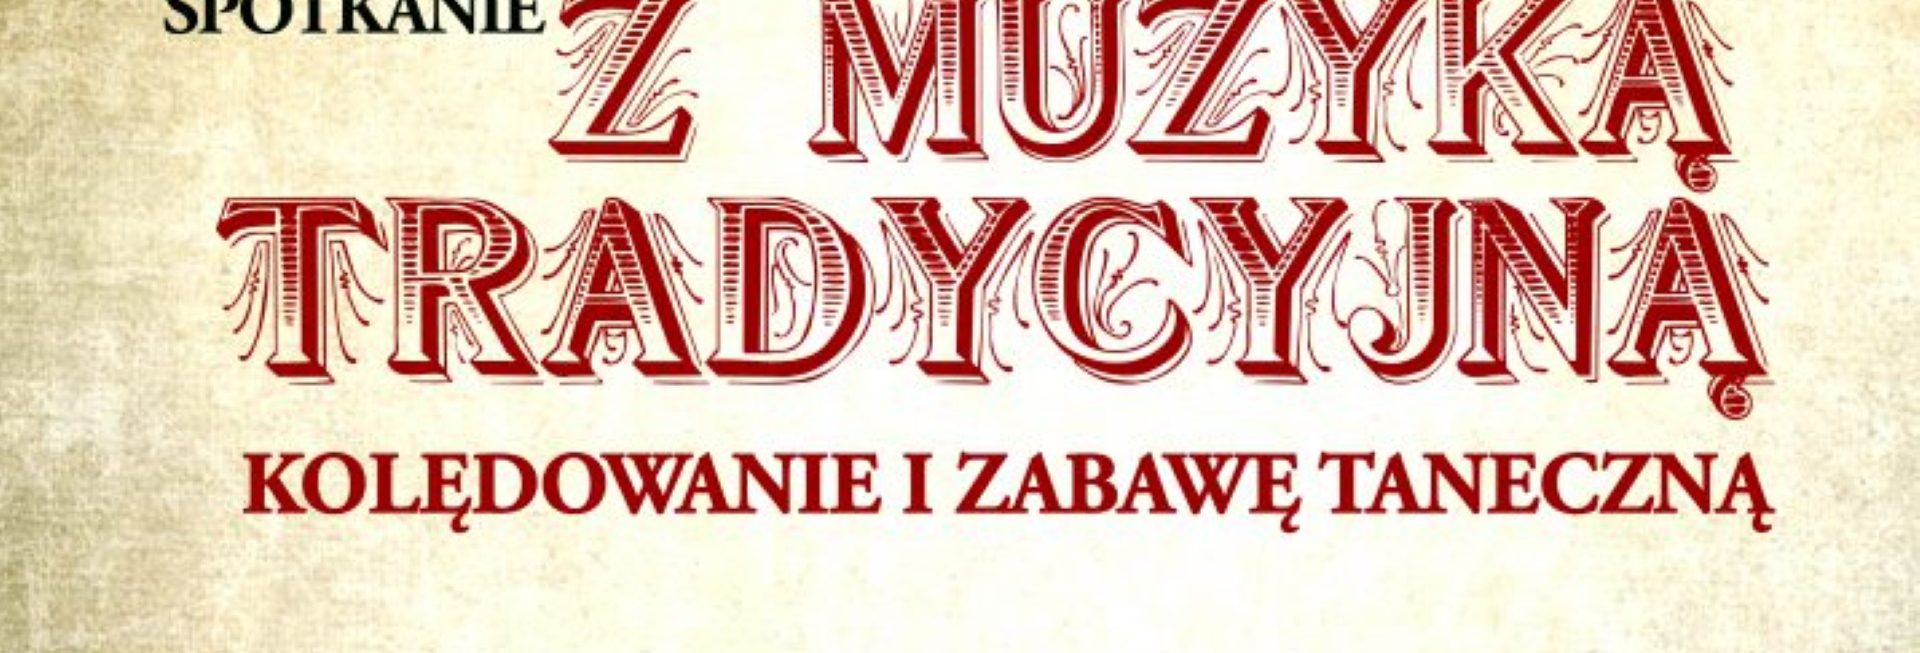 Plakat graficzny zapraszający do Dywit na Karnawałowe spotkanie z muzyką tradycyjną Dywity 2022.